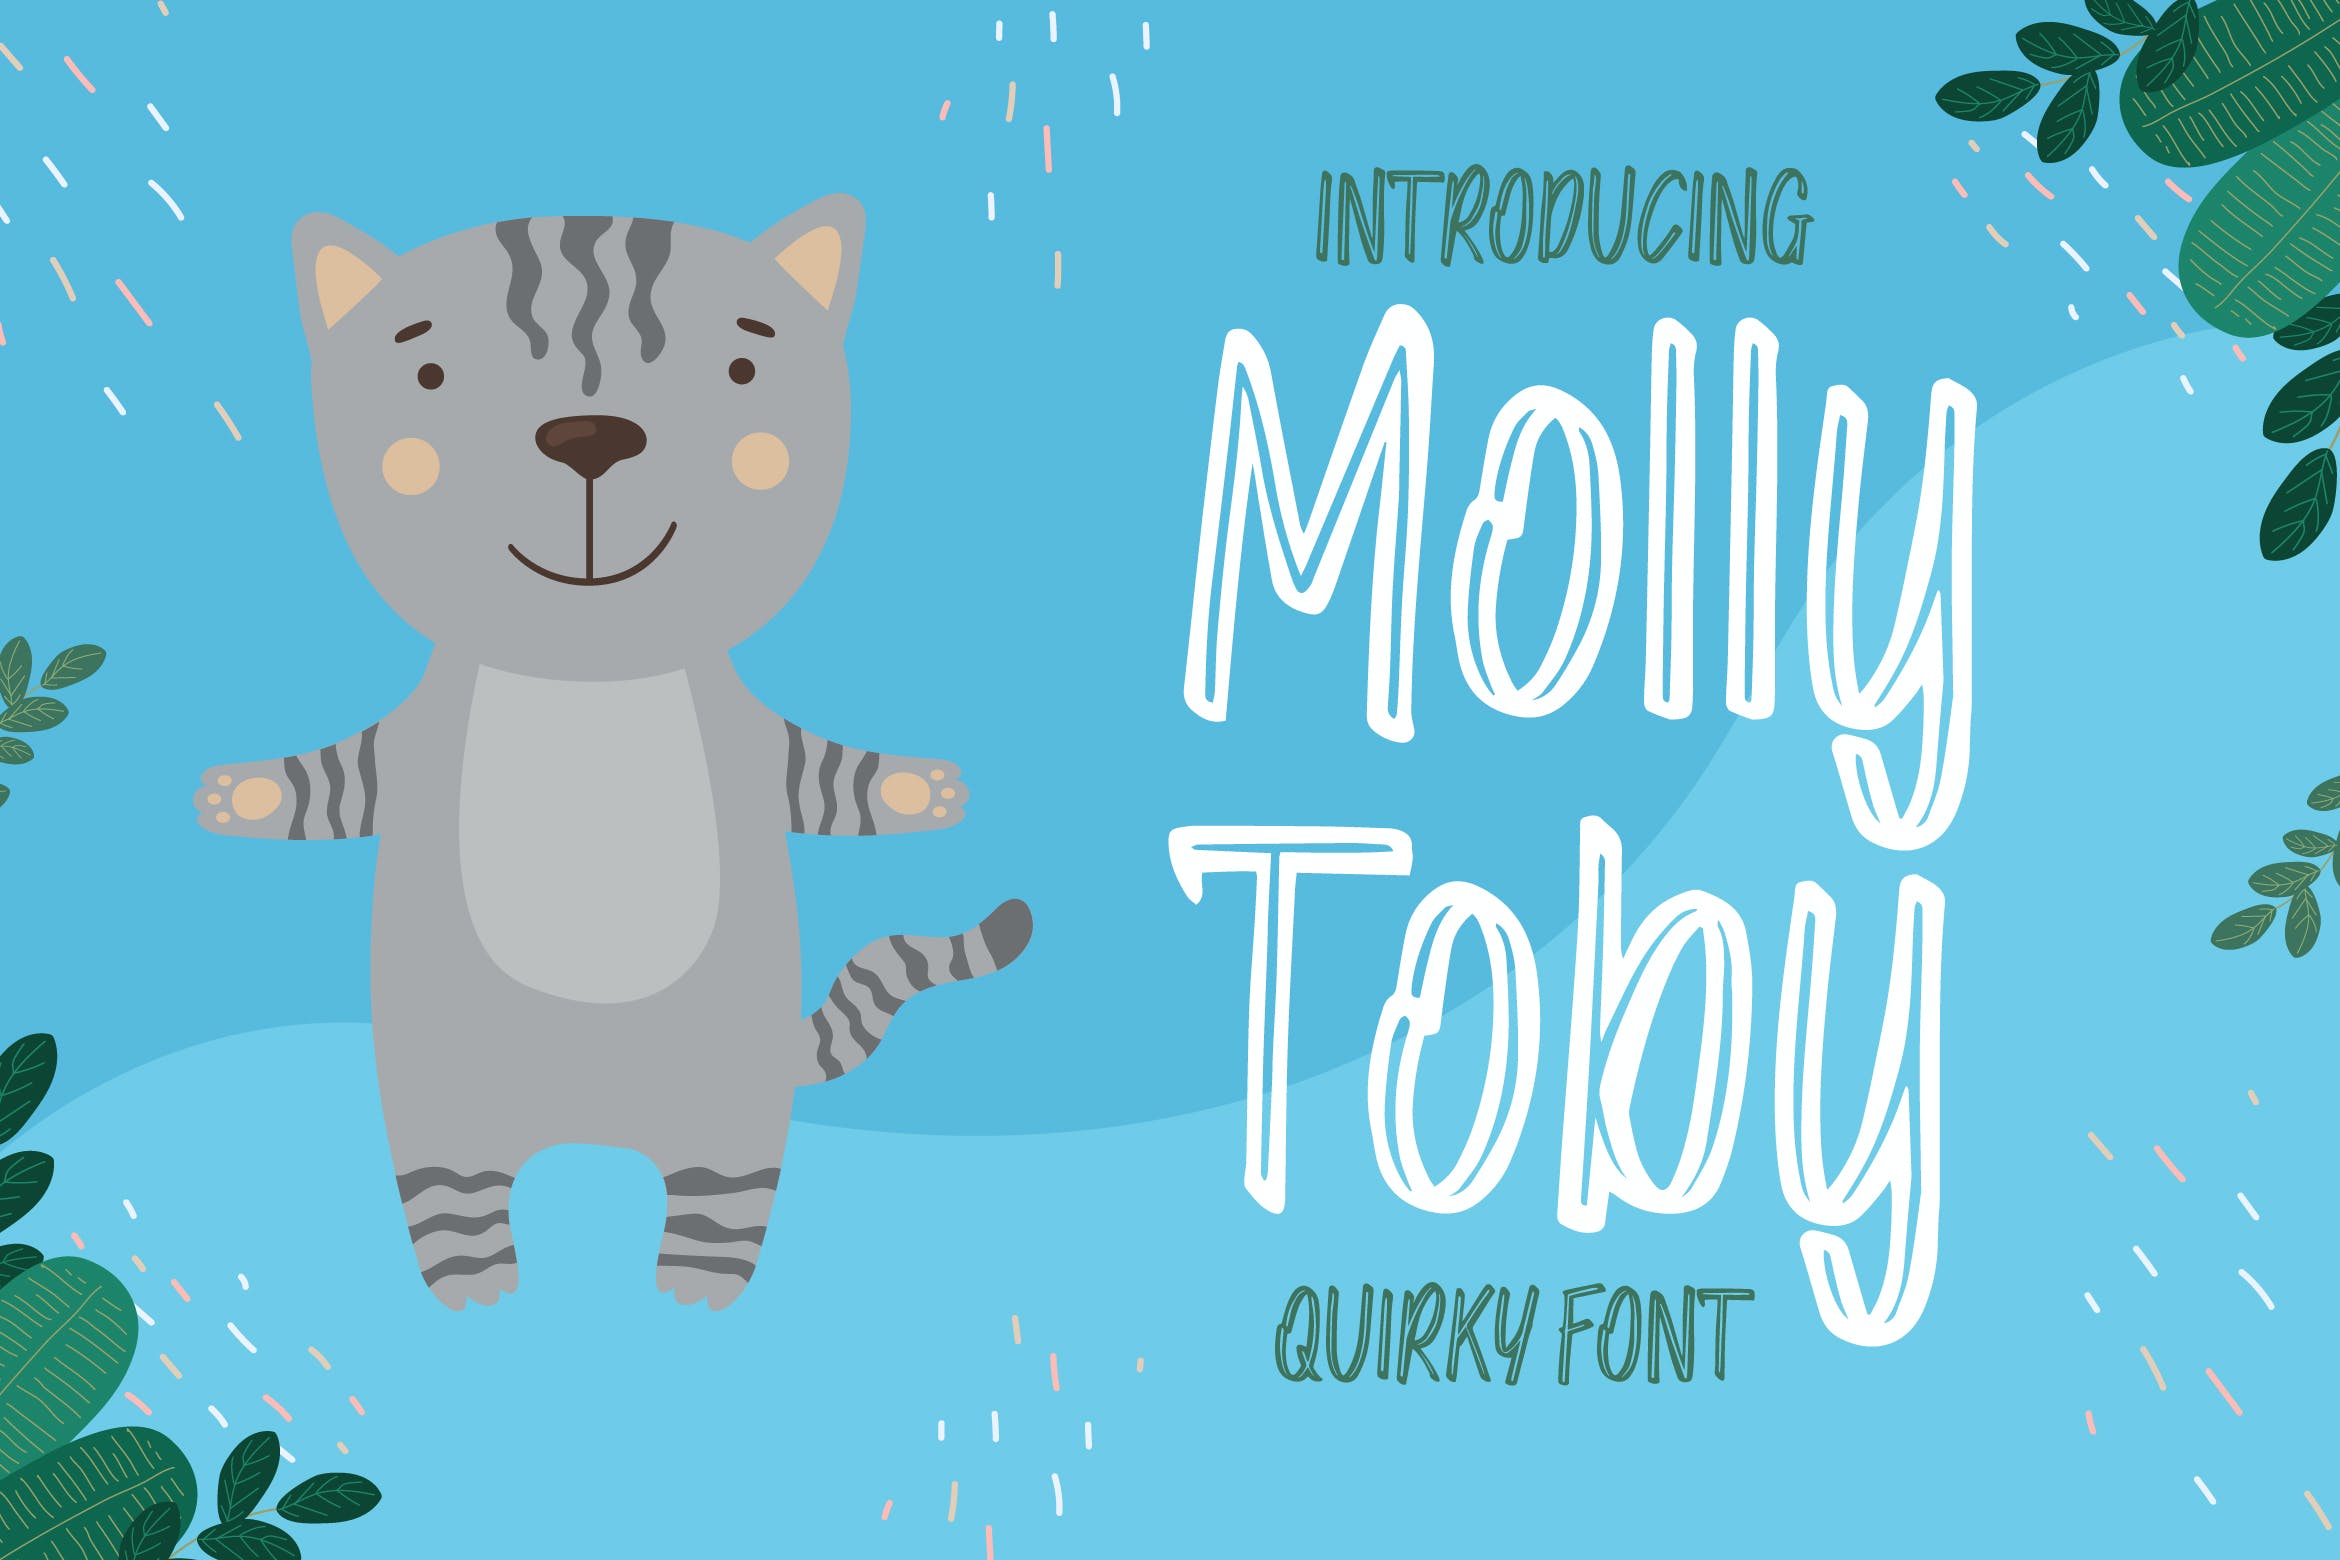 可爱卡通儿童主题英文字体合集 Molly Toby 设计素材 第1张